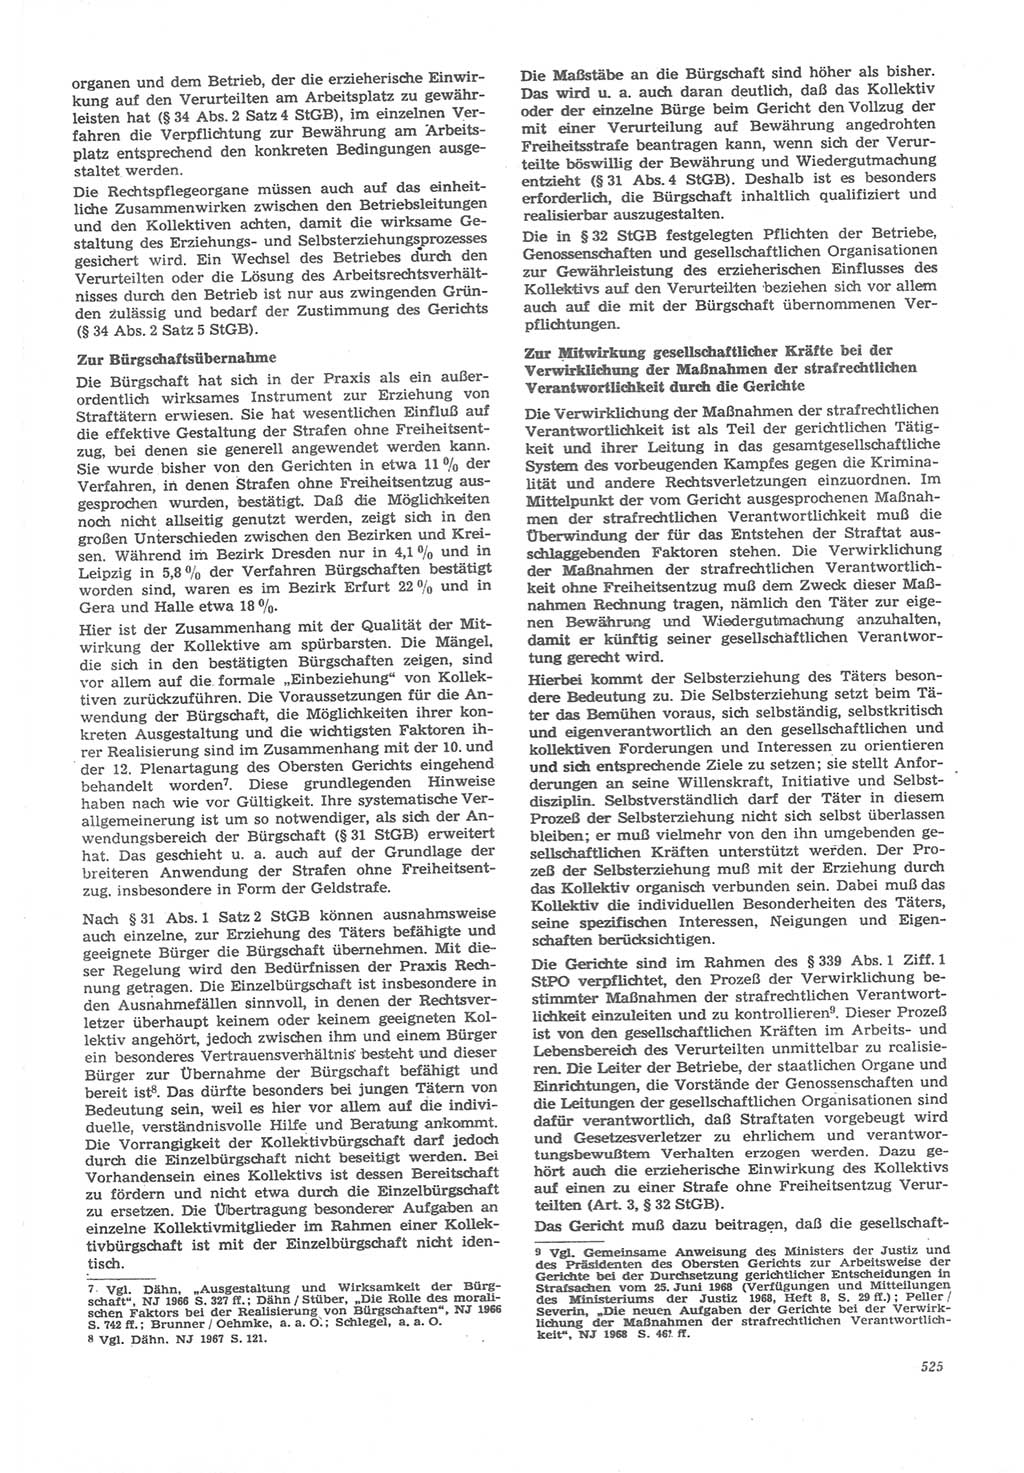 Neue Justiz (NJ), Zeitschrift für Recht und Rechtswissenschaft [Deutsche Demokratische Republik (DDR)], 22. Jahrgang 1968, Seite 525 (NJ DDR 1968, S. 525)